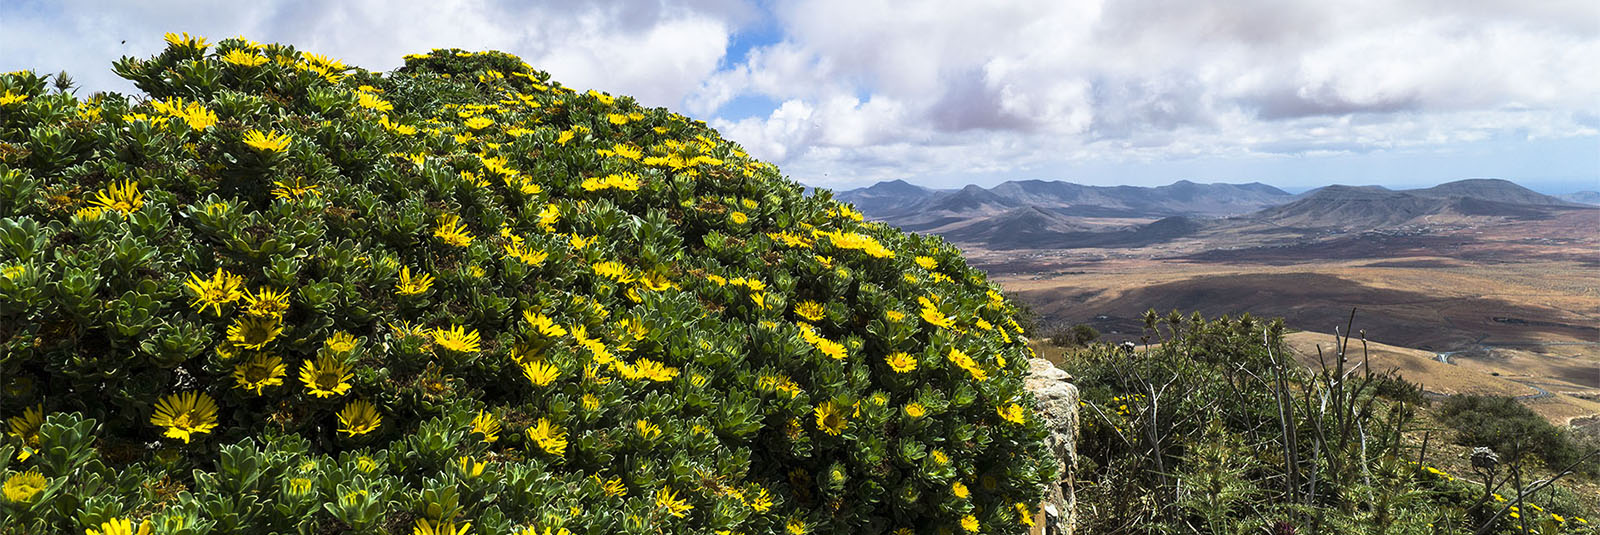 Die Magarita famara in feuchte Höhenlagen von Fuerteventura.